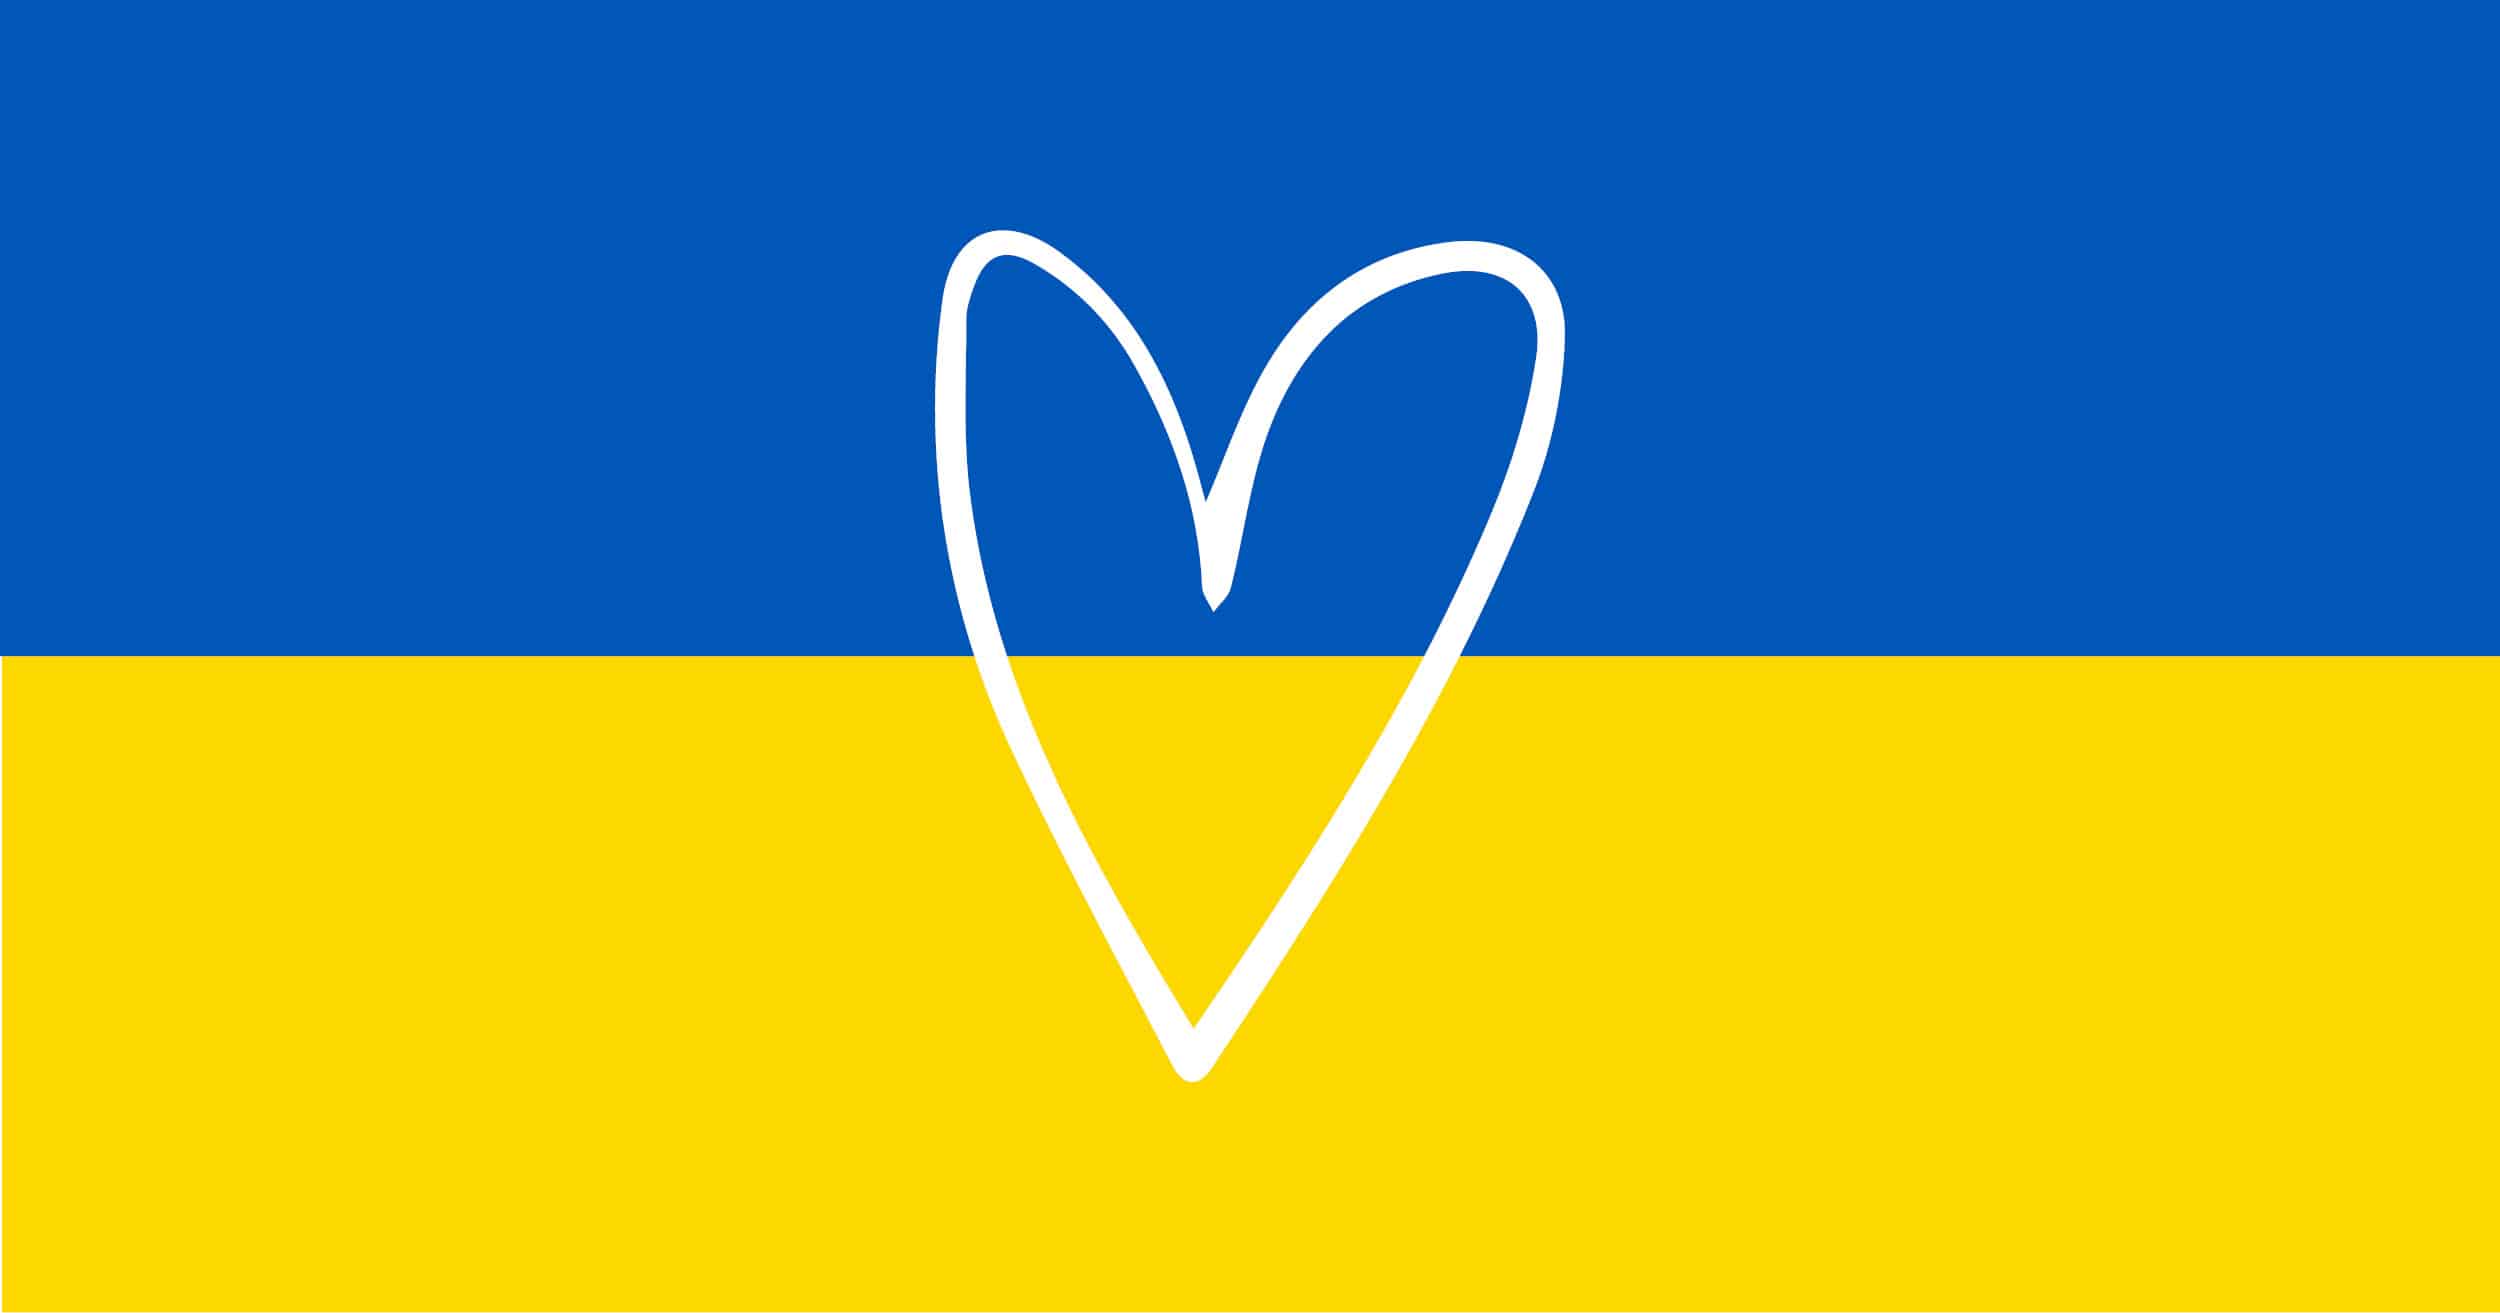 Ukrainas flagga som är blå och gul. I mitten av flaggan finns ett vitt hjärta.